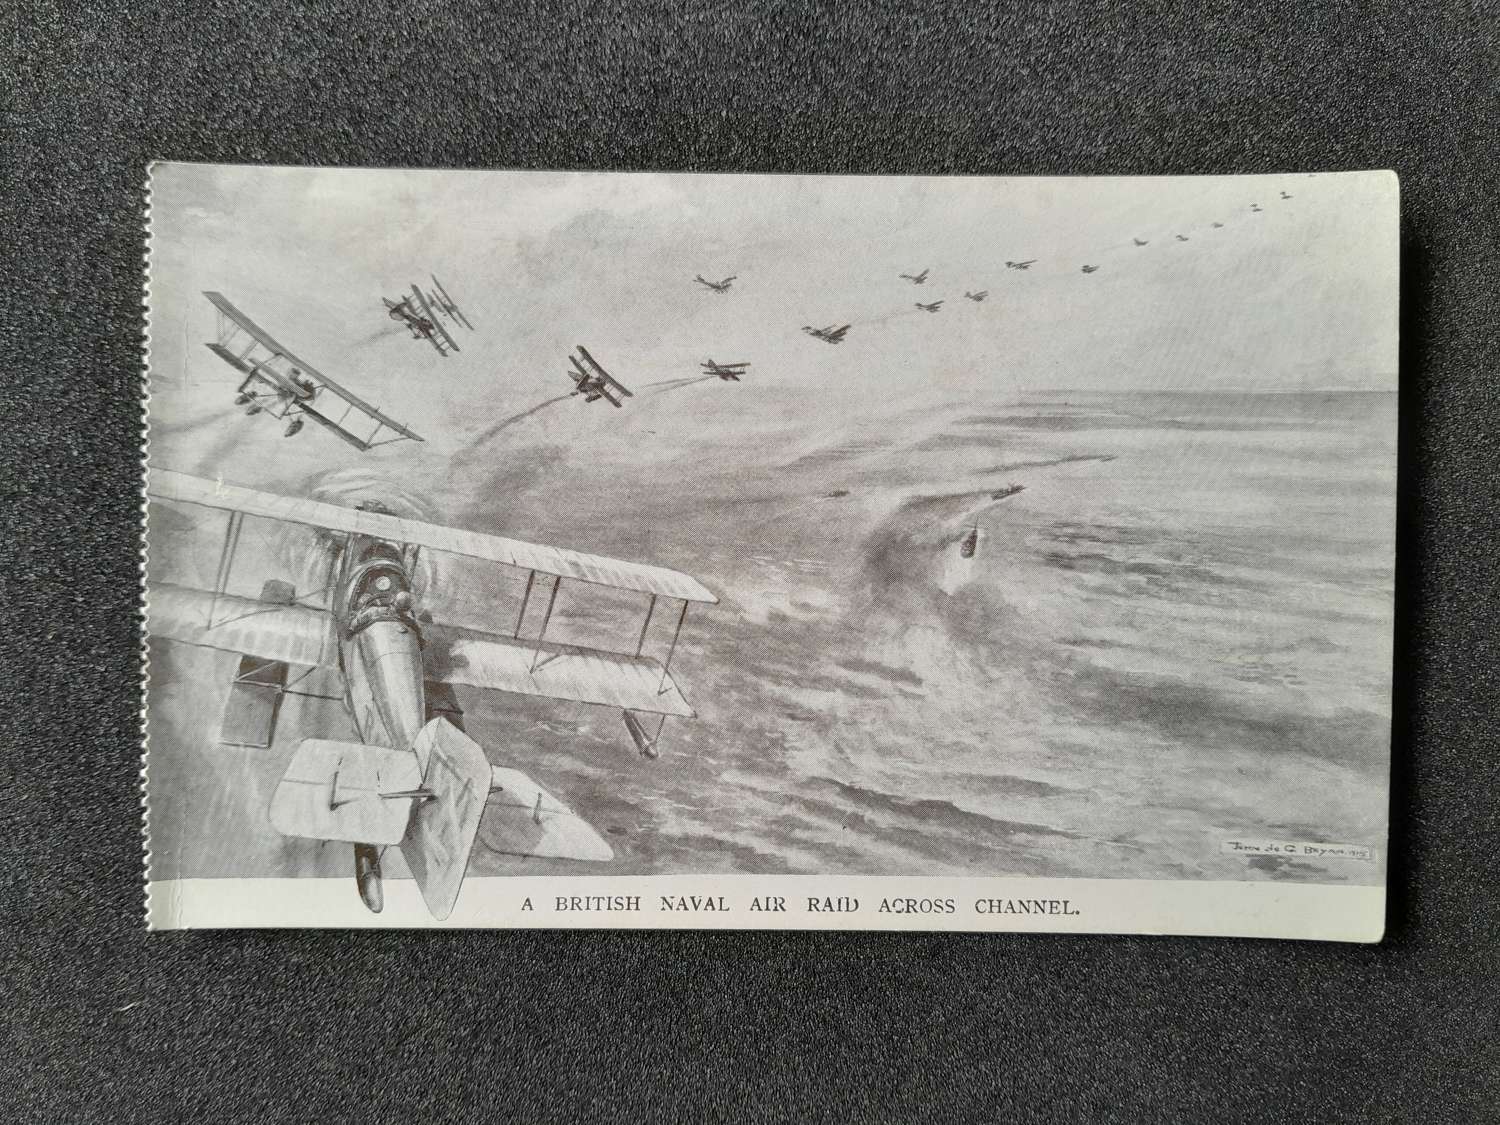 British Naval Air Raid Across Channel